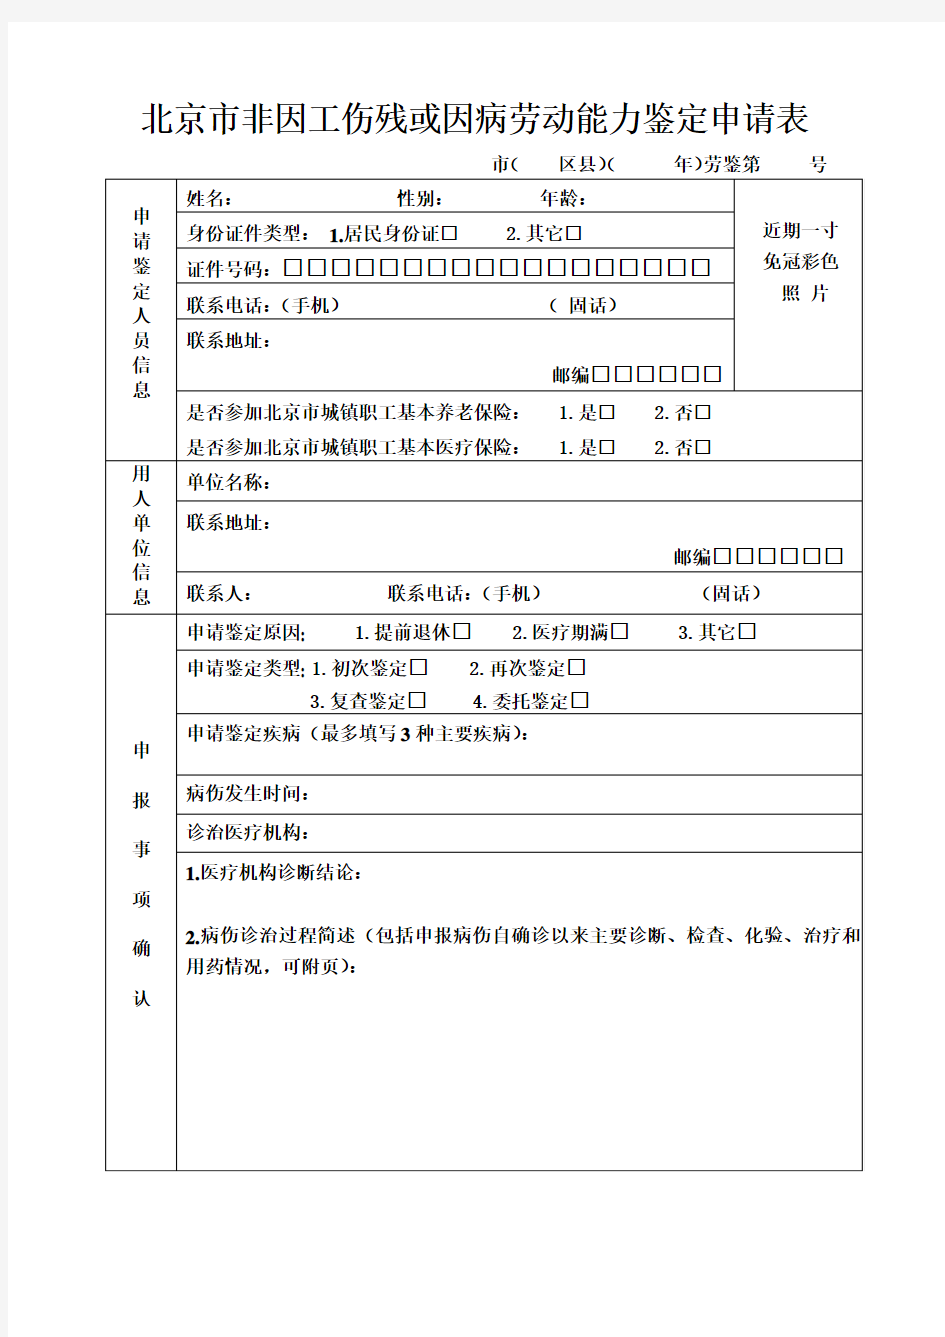 北京市非因工伤残或因病劳动能力鉴定申请表